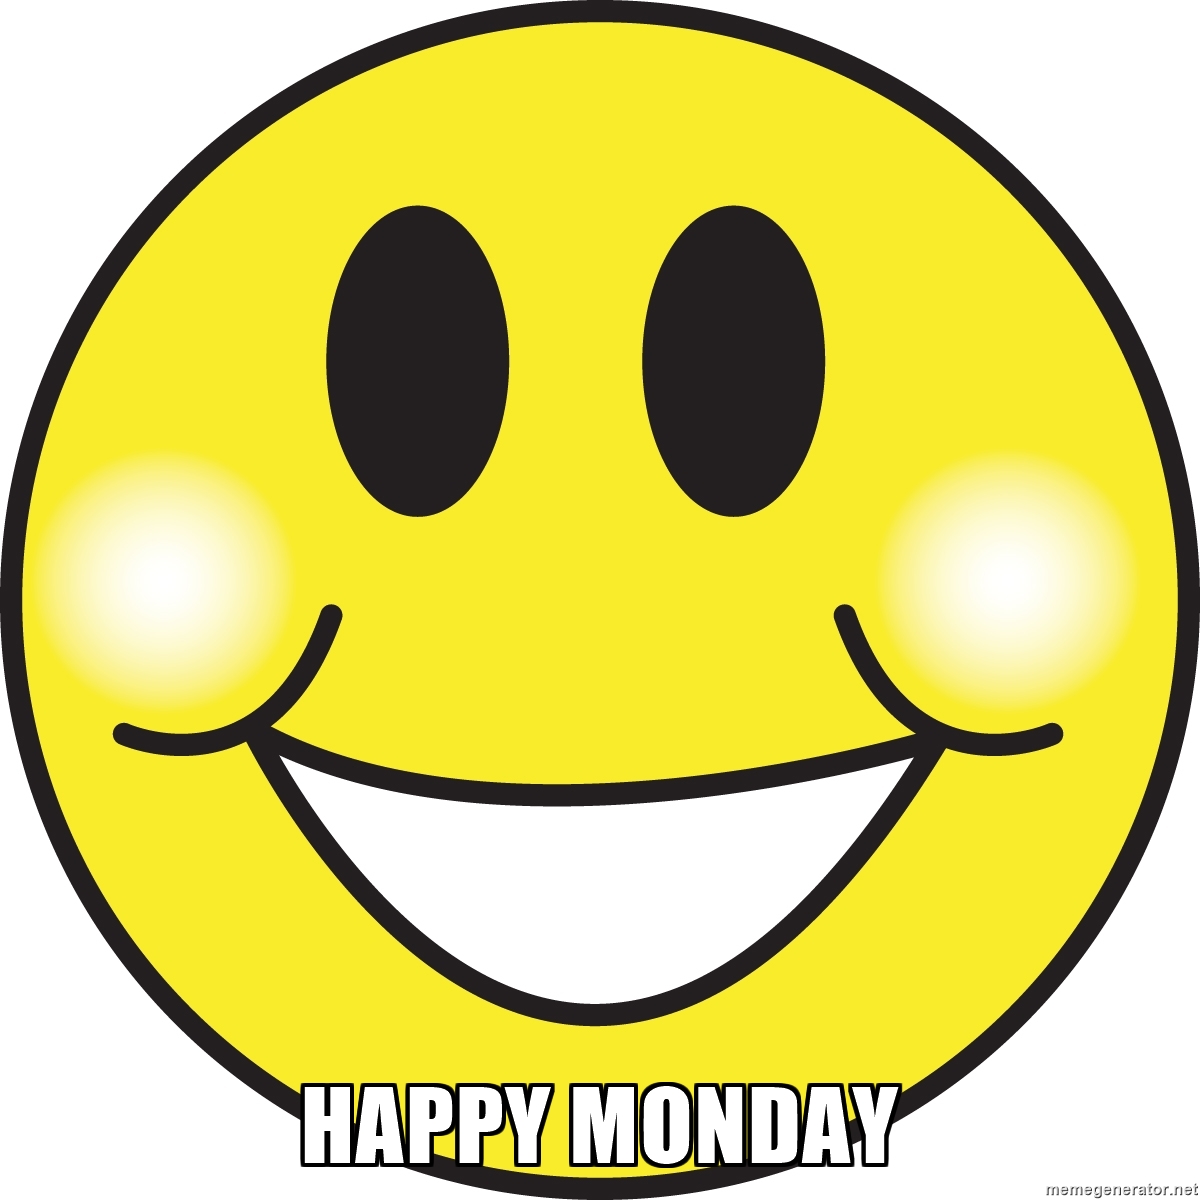 Happy Monday - BIG, HAPPY, SMILEY FACE!!! | Meme Generator